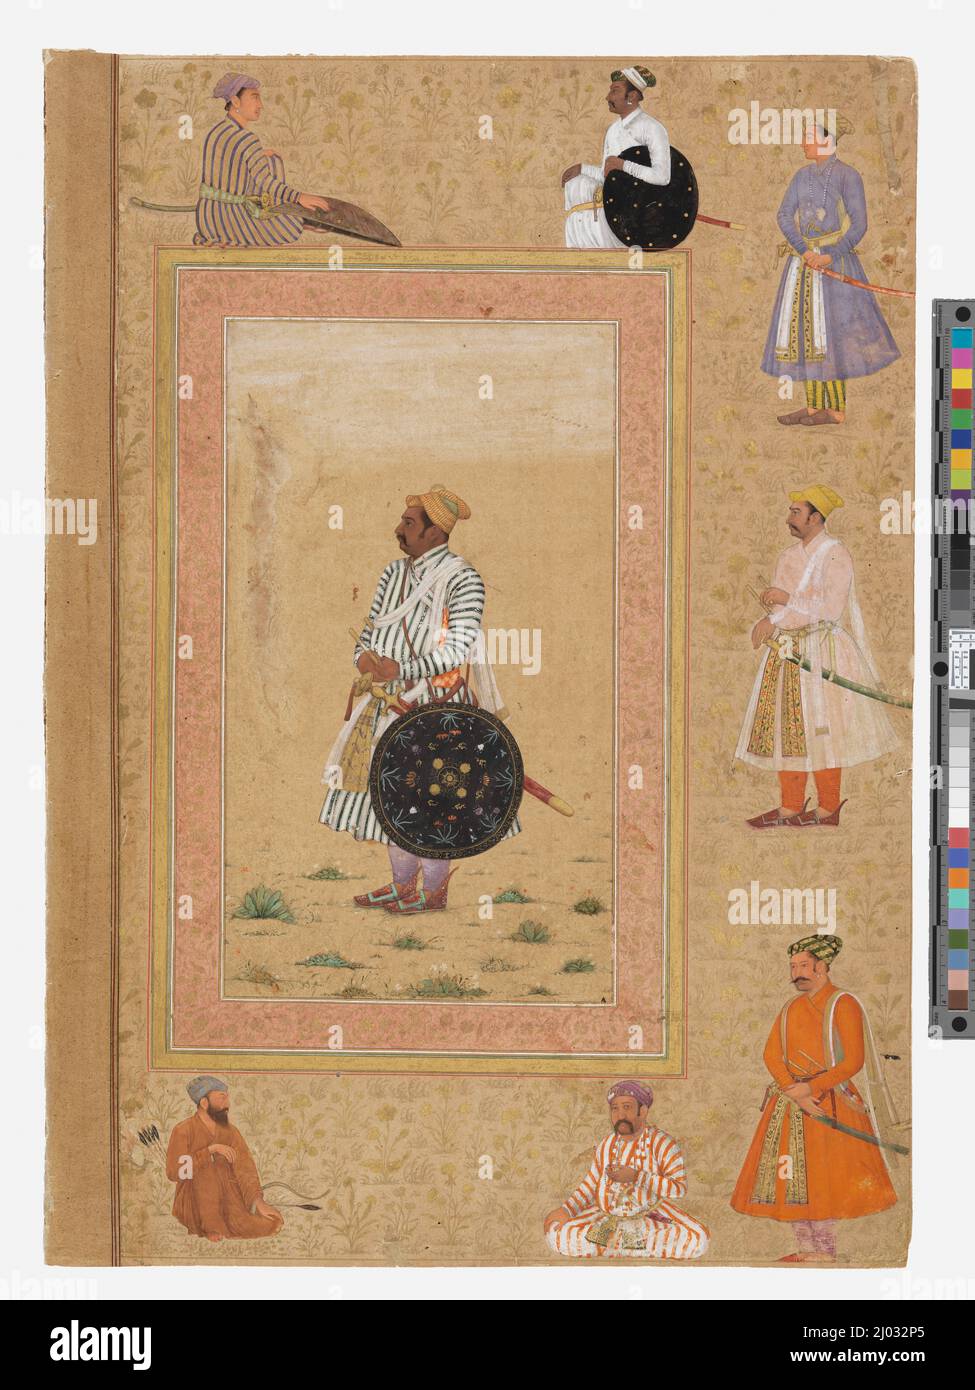 Rao Chattarsal di Bundi (?), Folio del Late Shah Jahan Album. Forse Balchand (India, circa 15961640)Mir Ali (1500-1544). India, impero Mughal (verso); Iran (recto), 1640-1650 (verso), 1500-1544 (recto). Disegni; acquerelli. Acquerello opaco, oro e inchiostro su carta Foto Stock